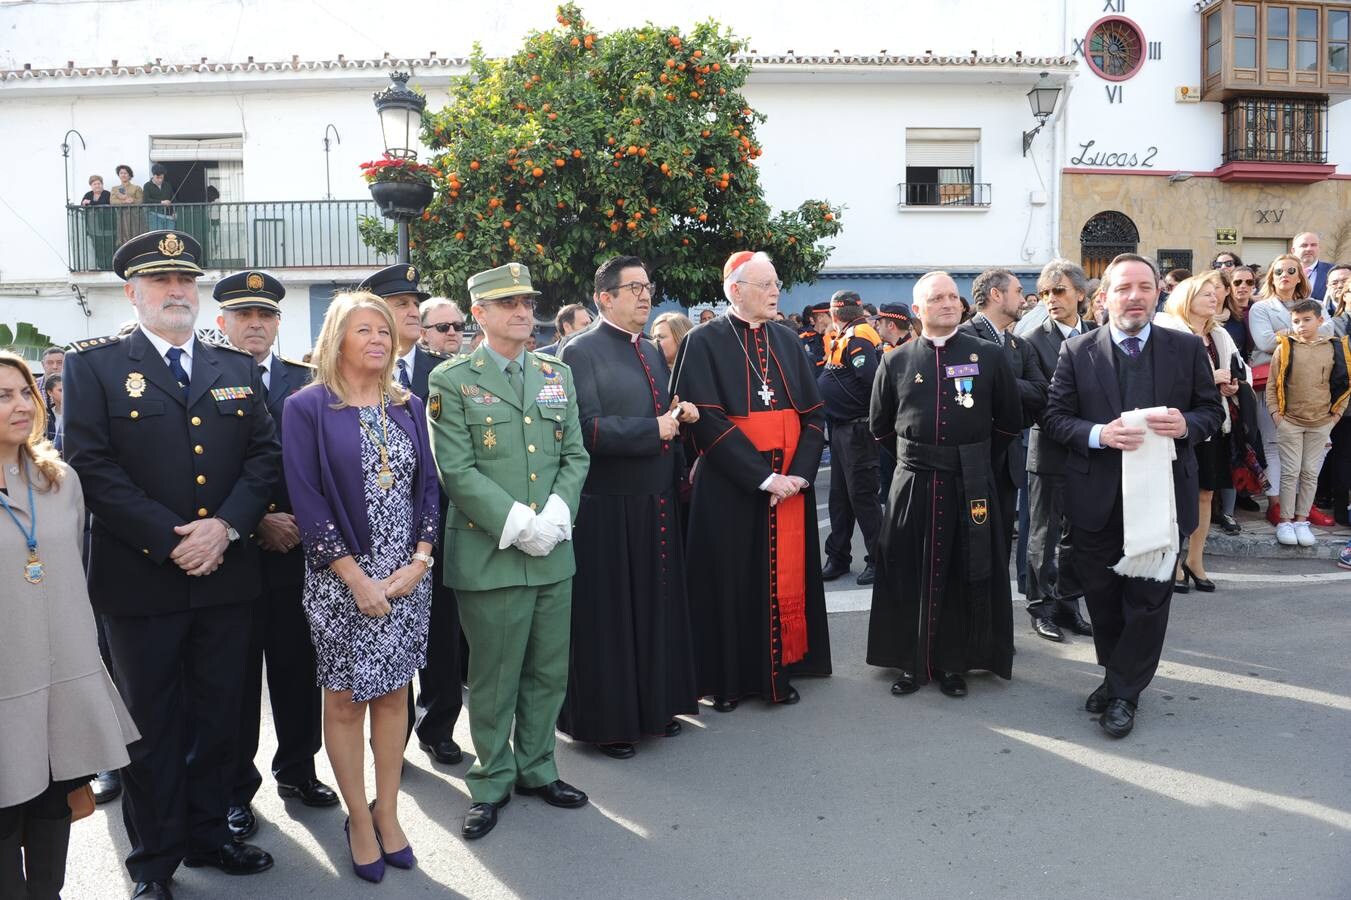 Jornada importante para las hermandades con vínculos legionarios, que sehan reunido en Marbella con el objetivo de estrechar lazos en el marco de un encuentro nacional, el segundo que se organiza de estas características en España